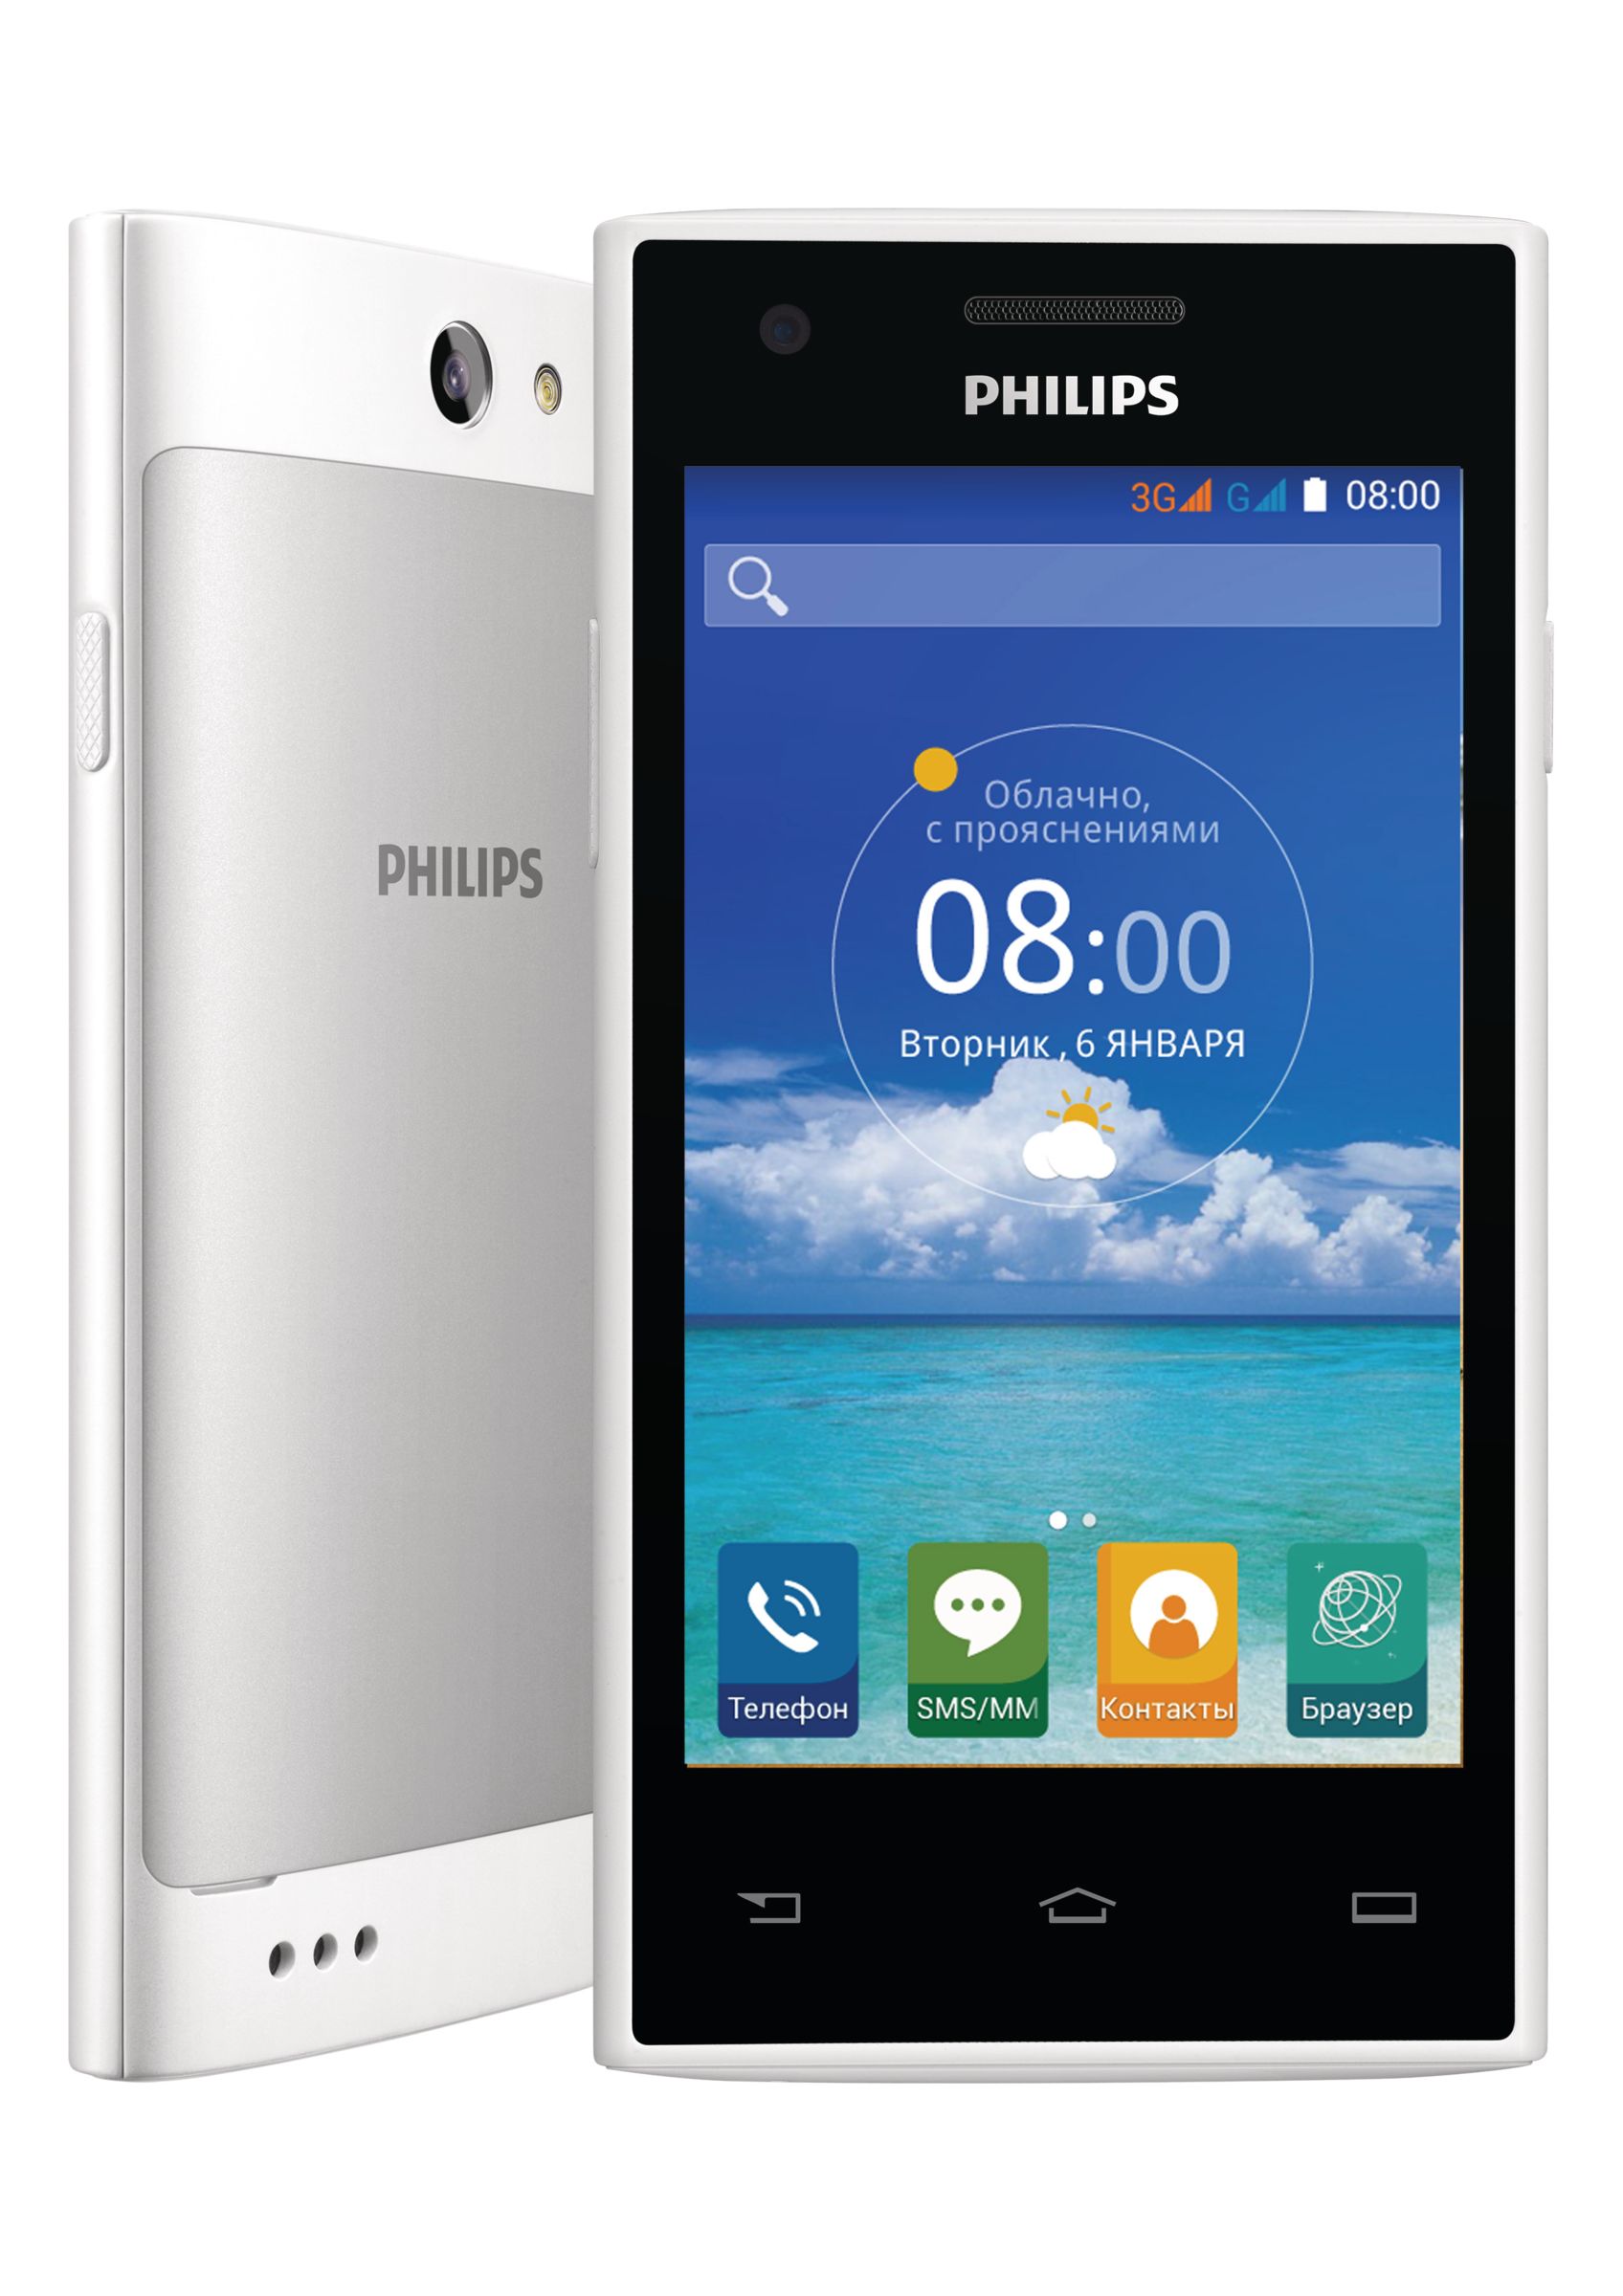 Заказать филипс. Philips Xenium s309. Филипс с 309. Philips s309 Black. Филипс Xenium белый смартфон.